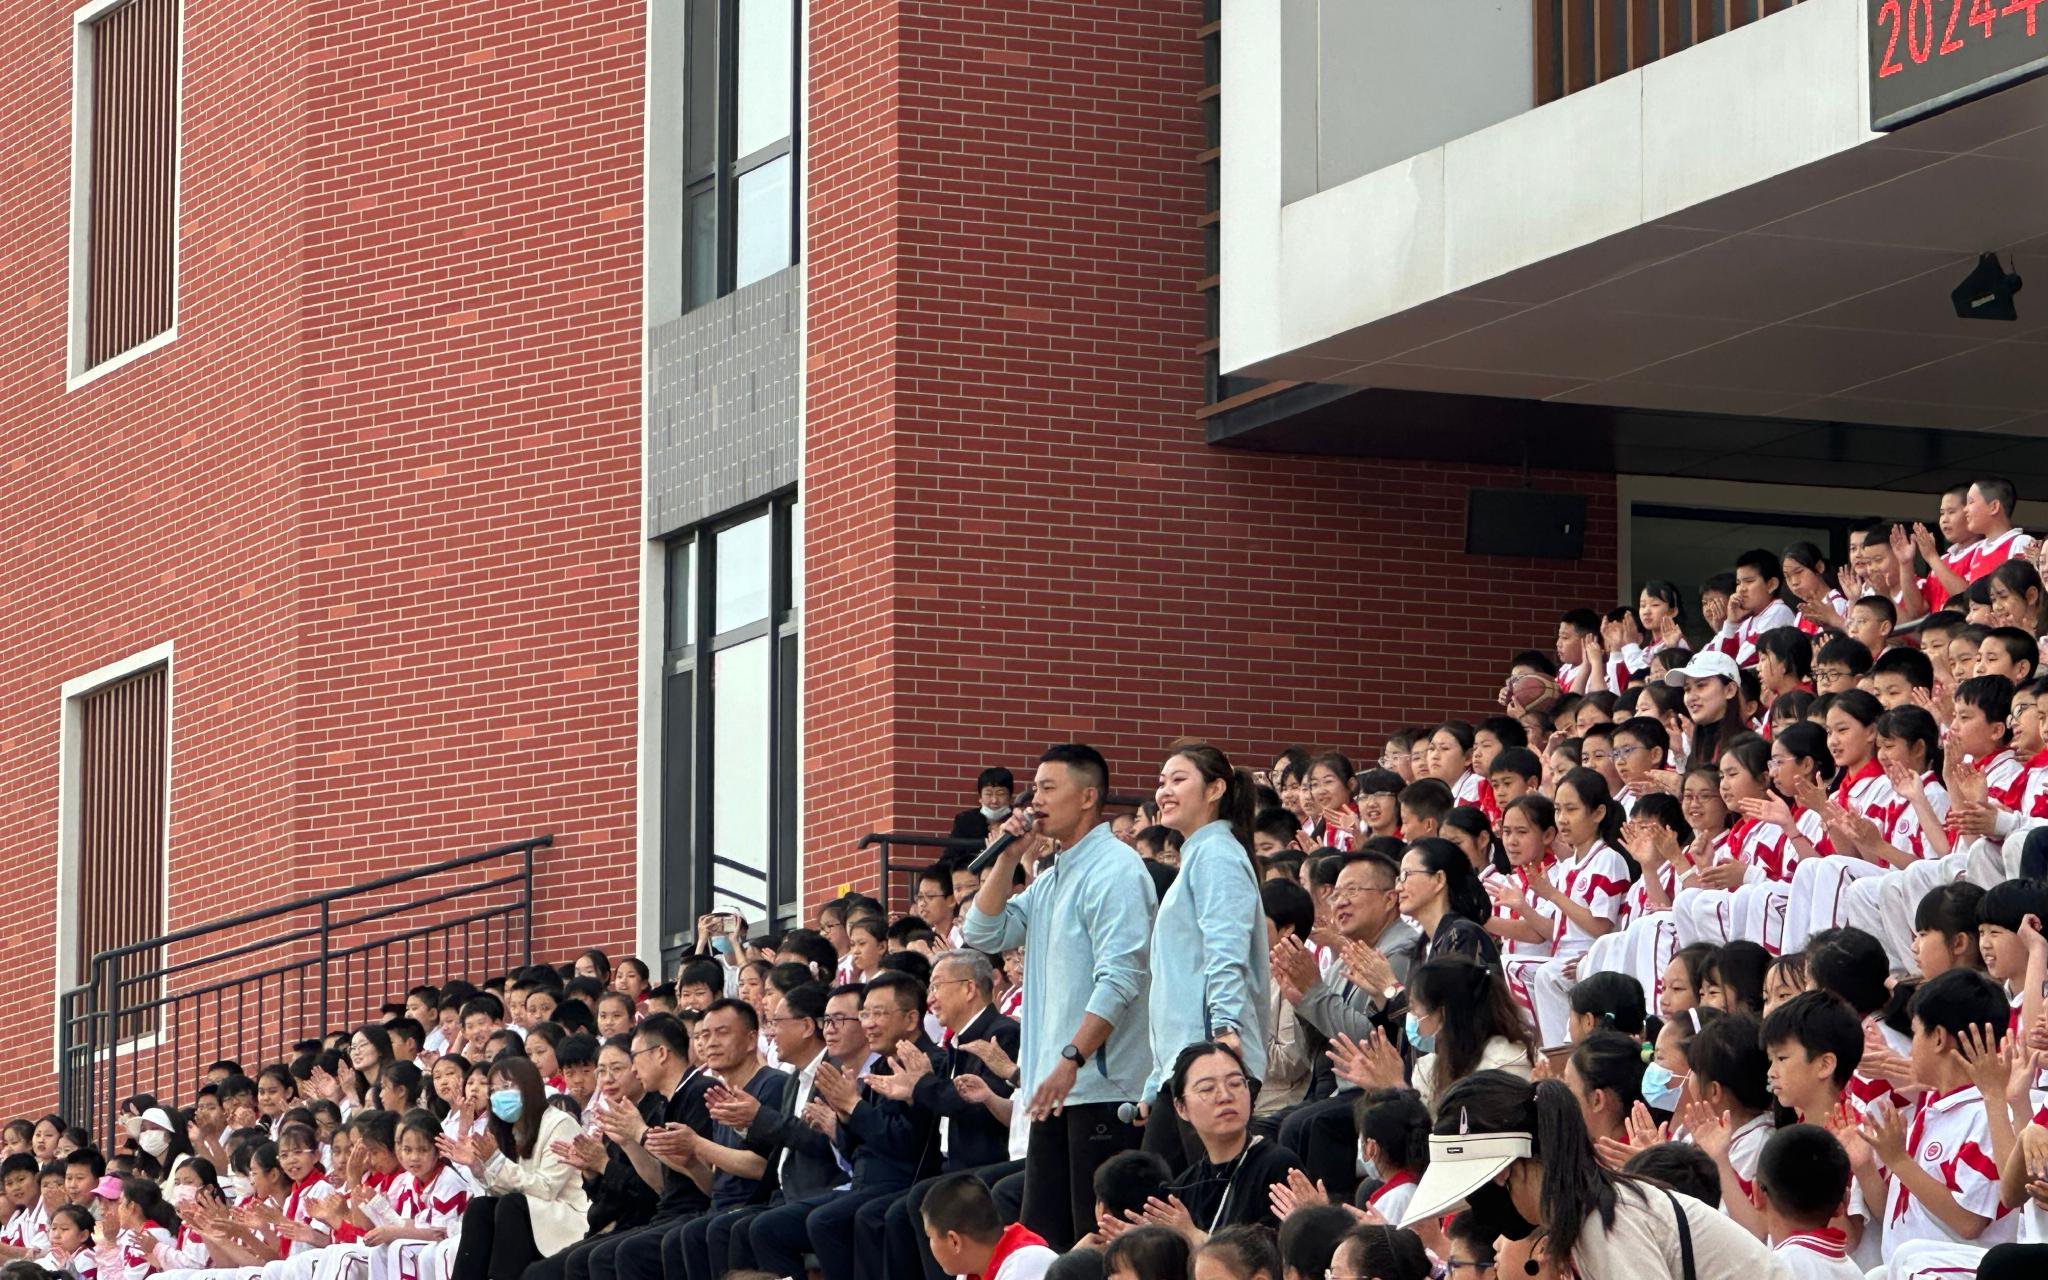 兩位體育老師以歌聲開場。 新京報記者劉洋 攝